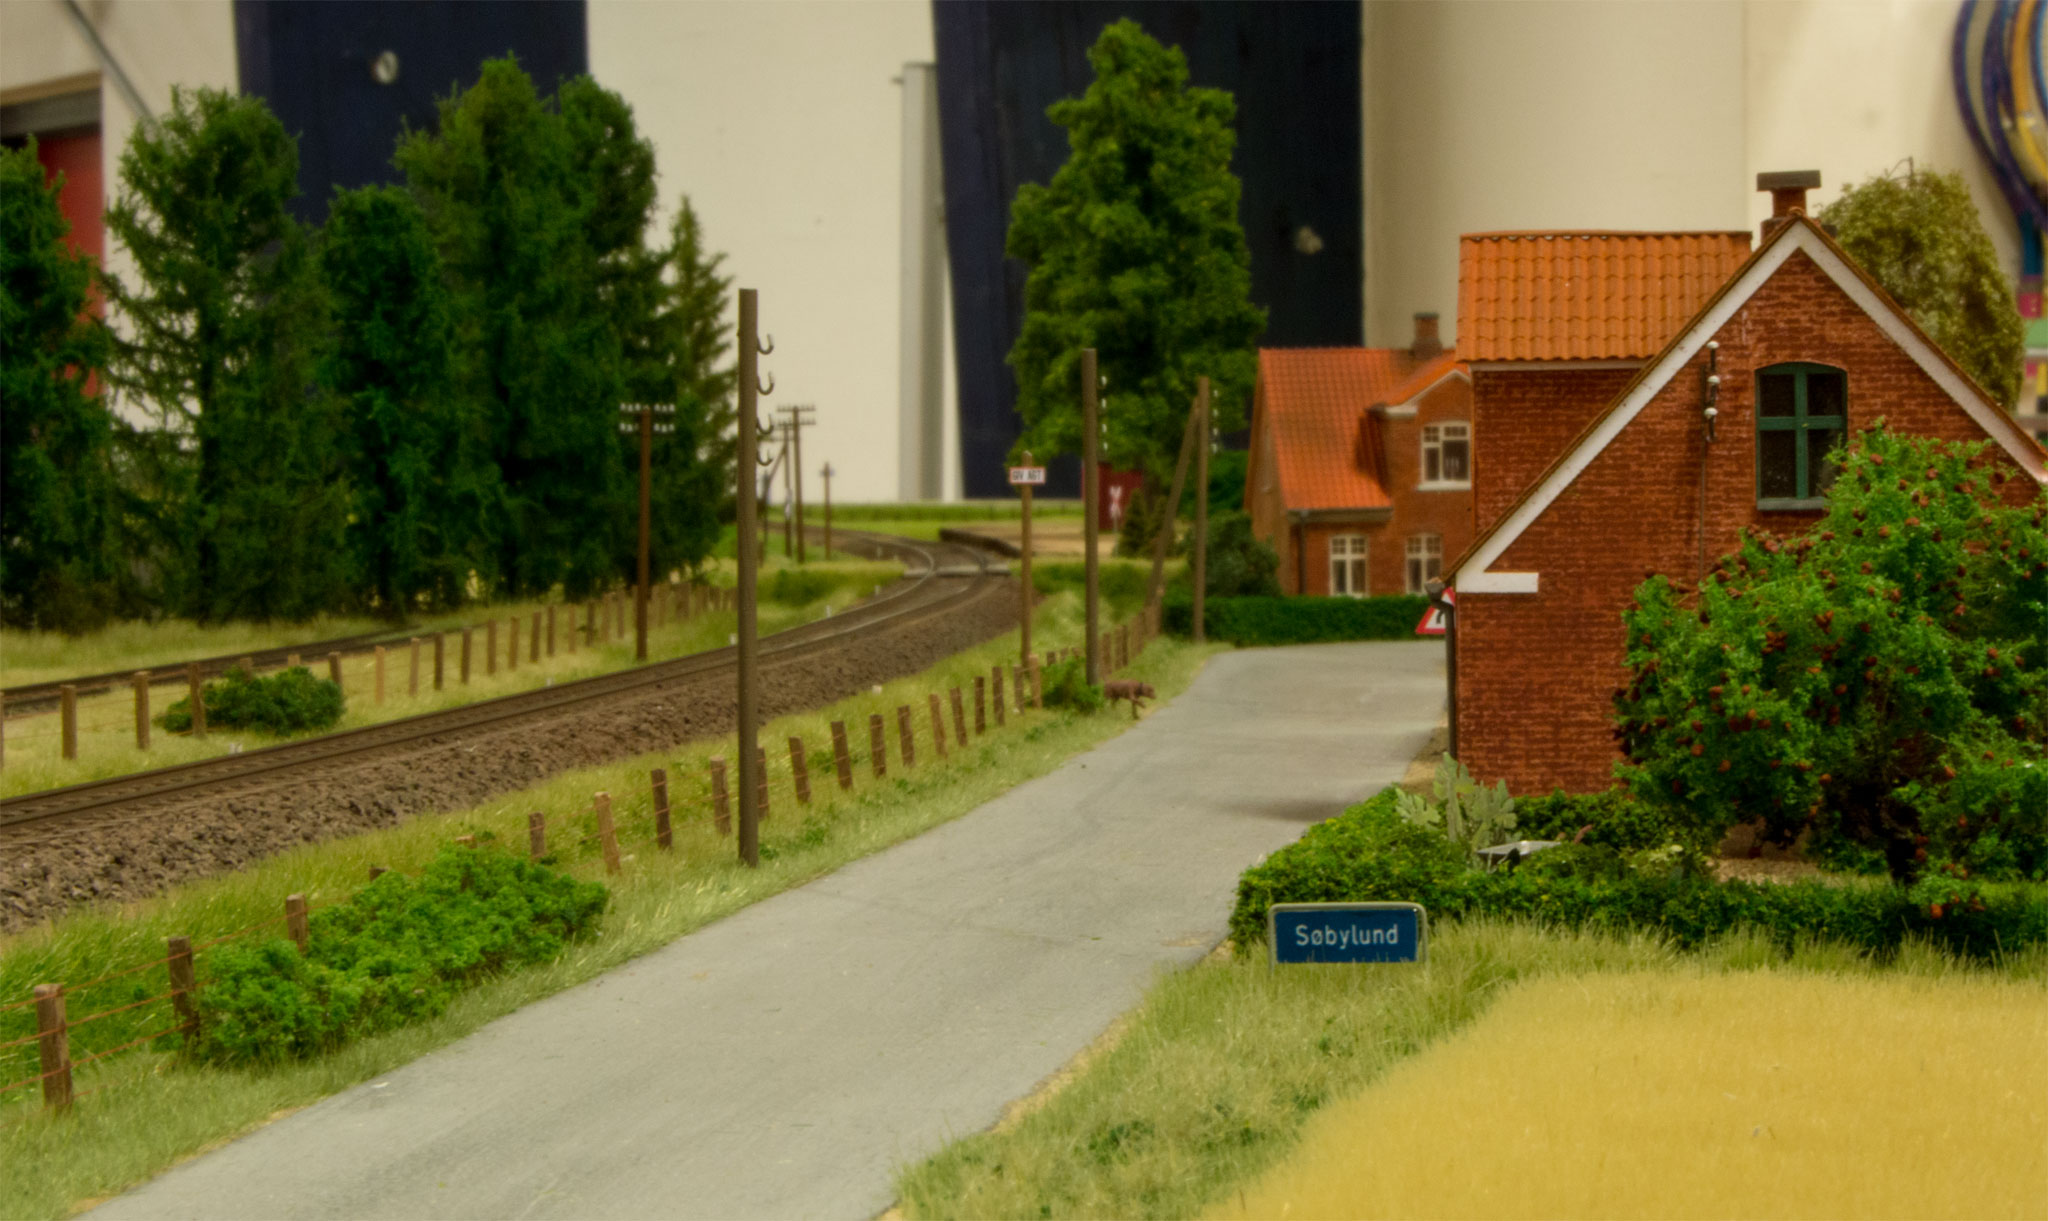 Nogle få huse giver indtryk af den lille Søbylund by i den ene ende af Torben Muncks moduler